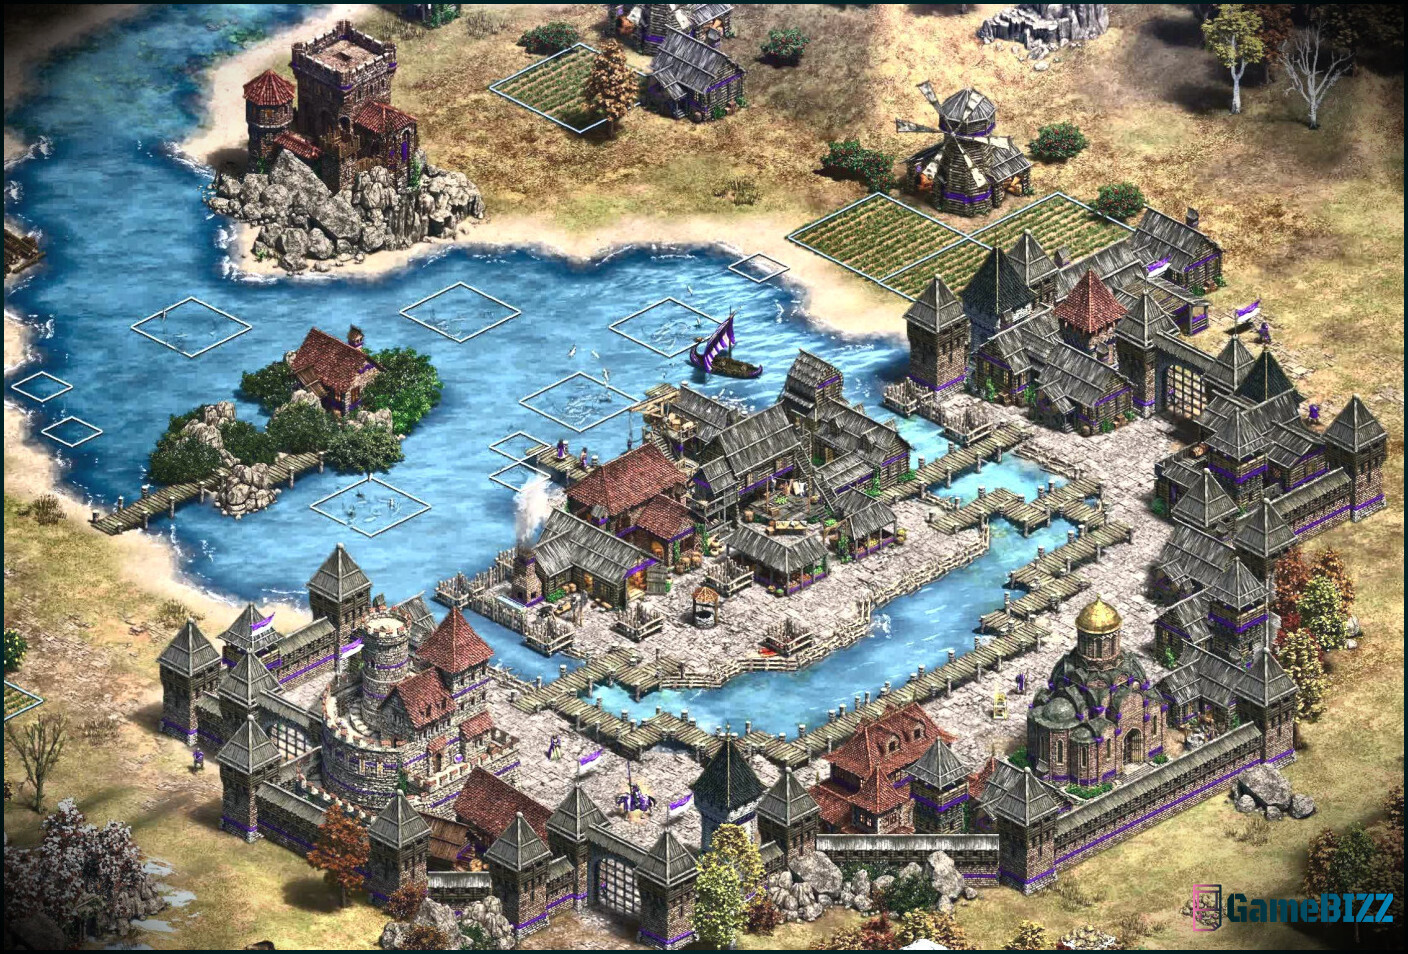 Skyrim-Fan stellt das gesamte Spiel in Age of Empires 2 nach